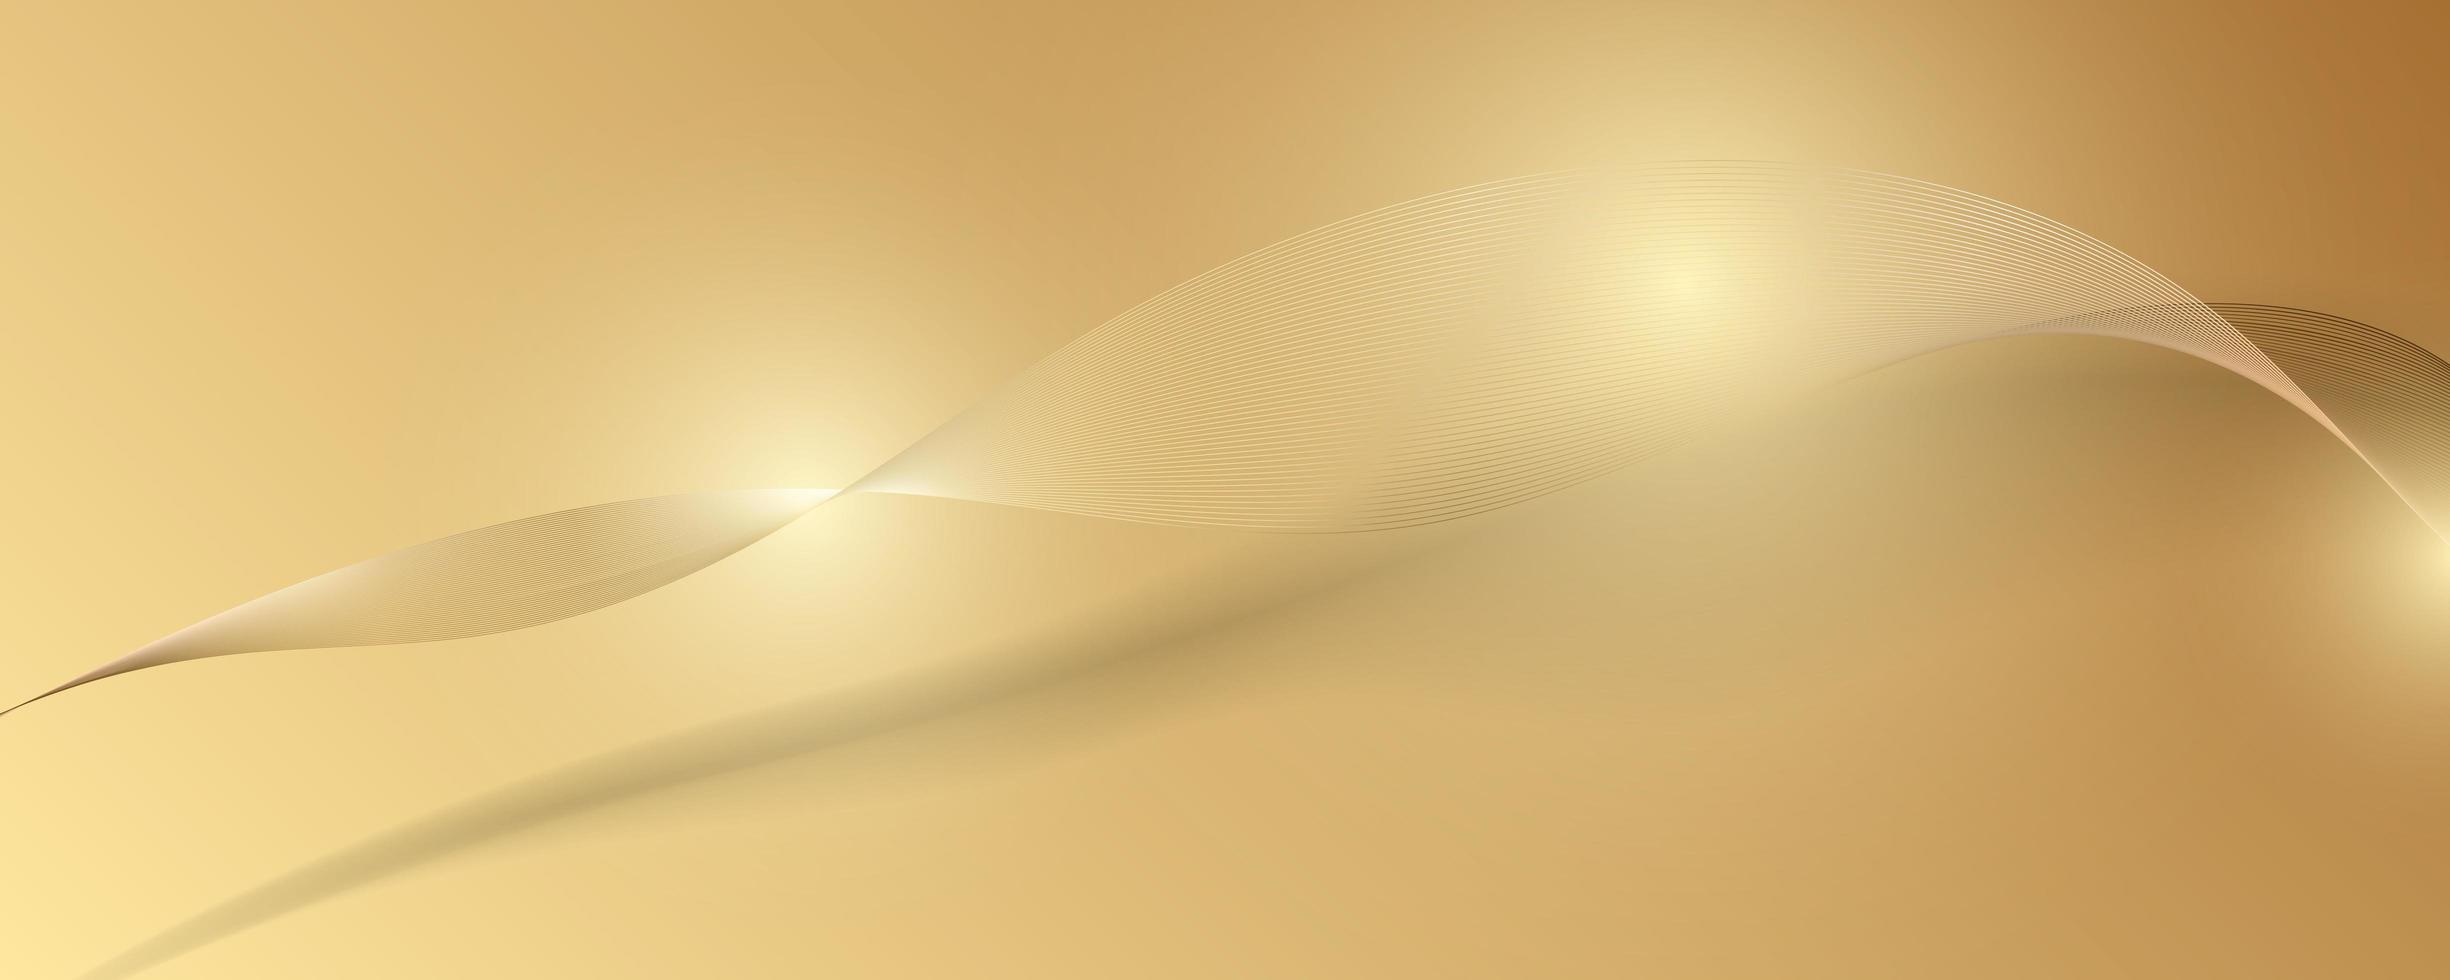 Fondo de lujo de oro abstracto. ilustración vectorial vector